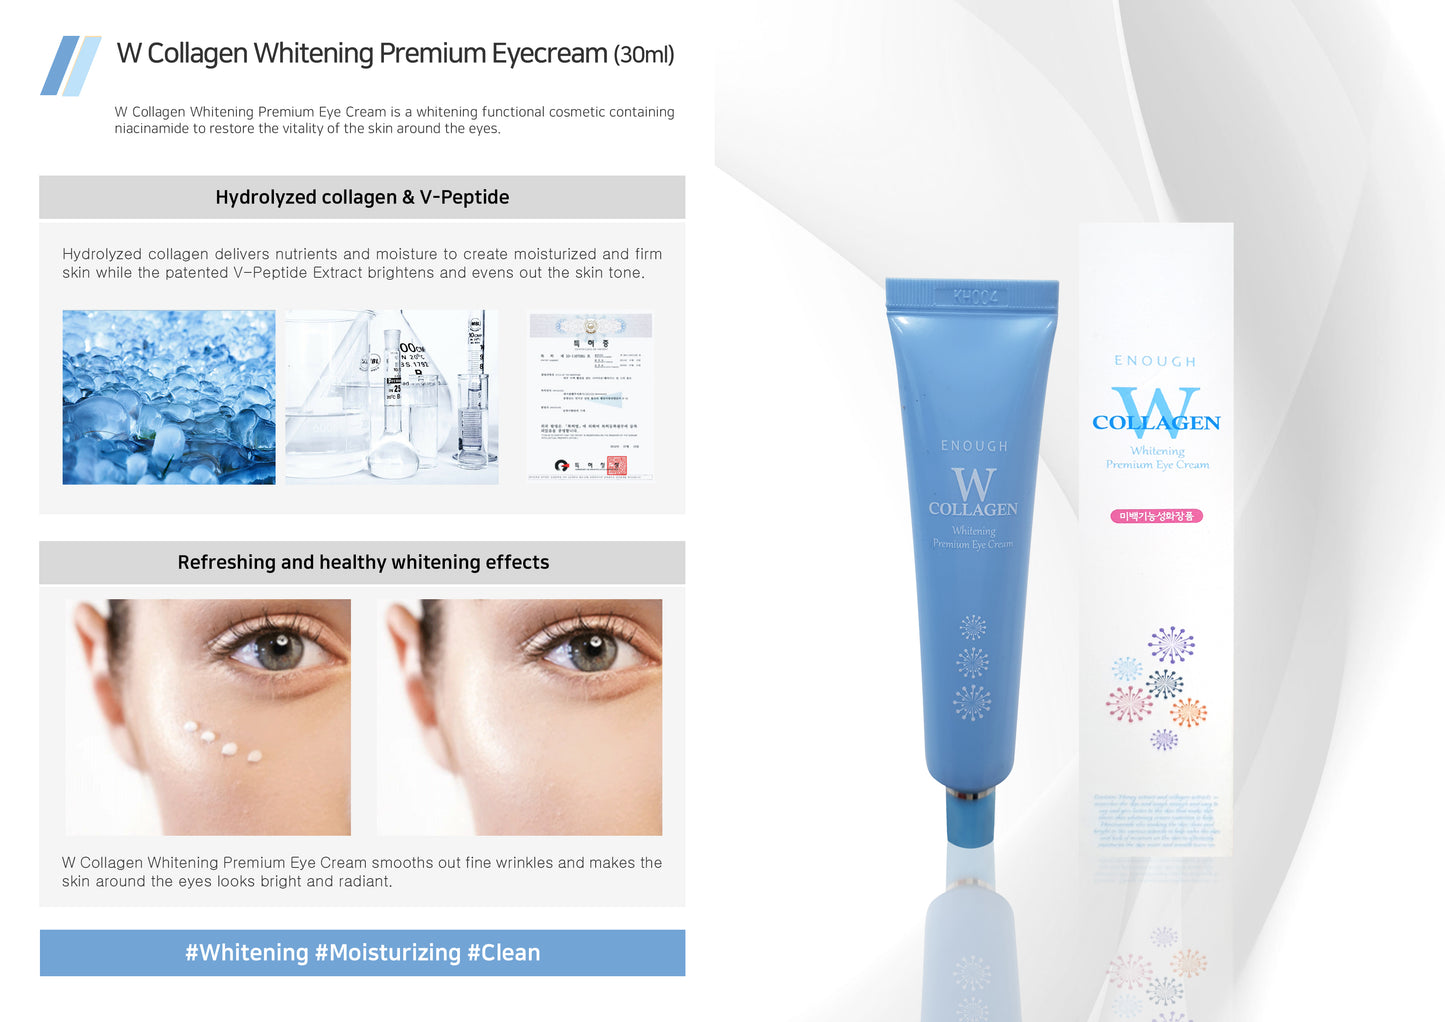 ENOUGH W Collagen Whitening Premium Eye Cream (30ml)